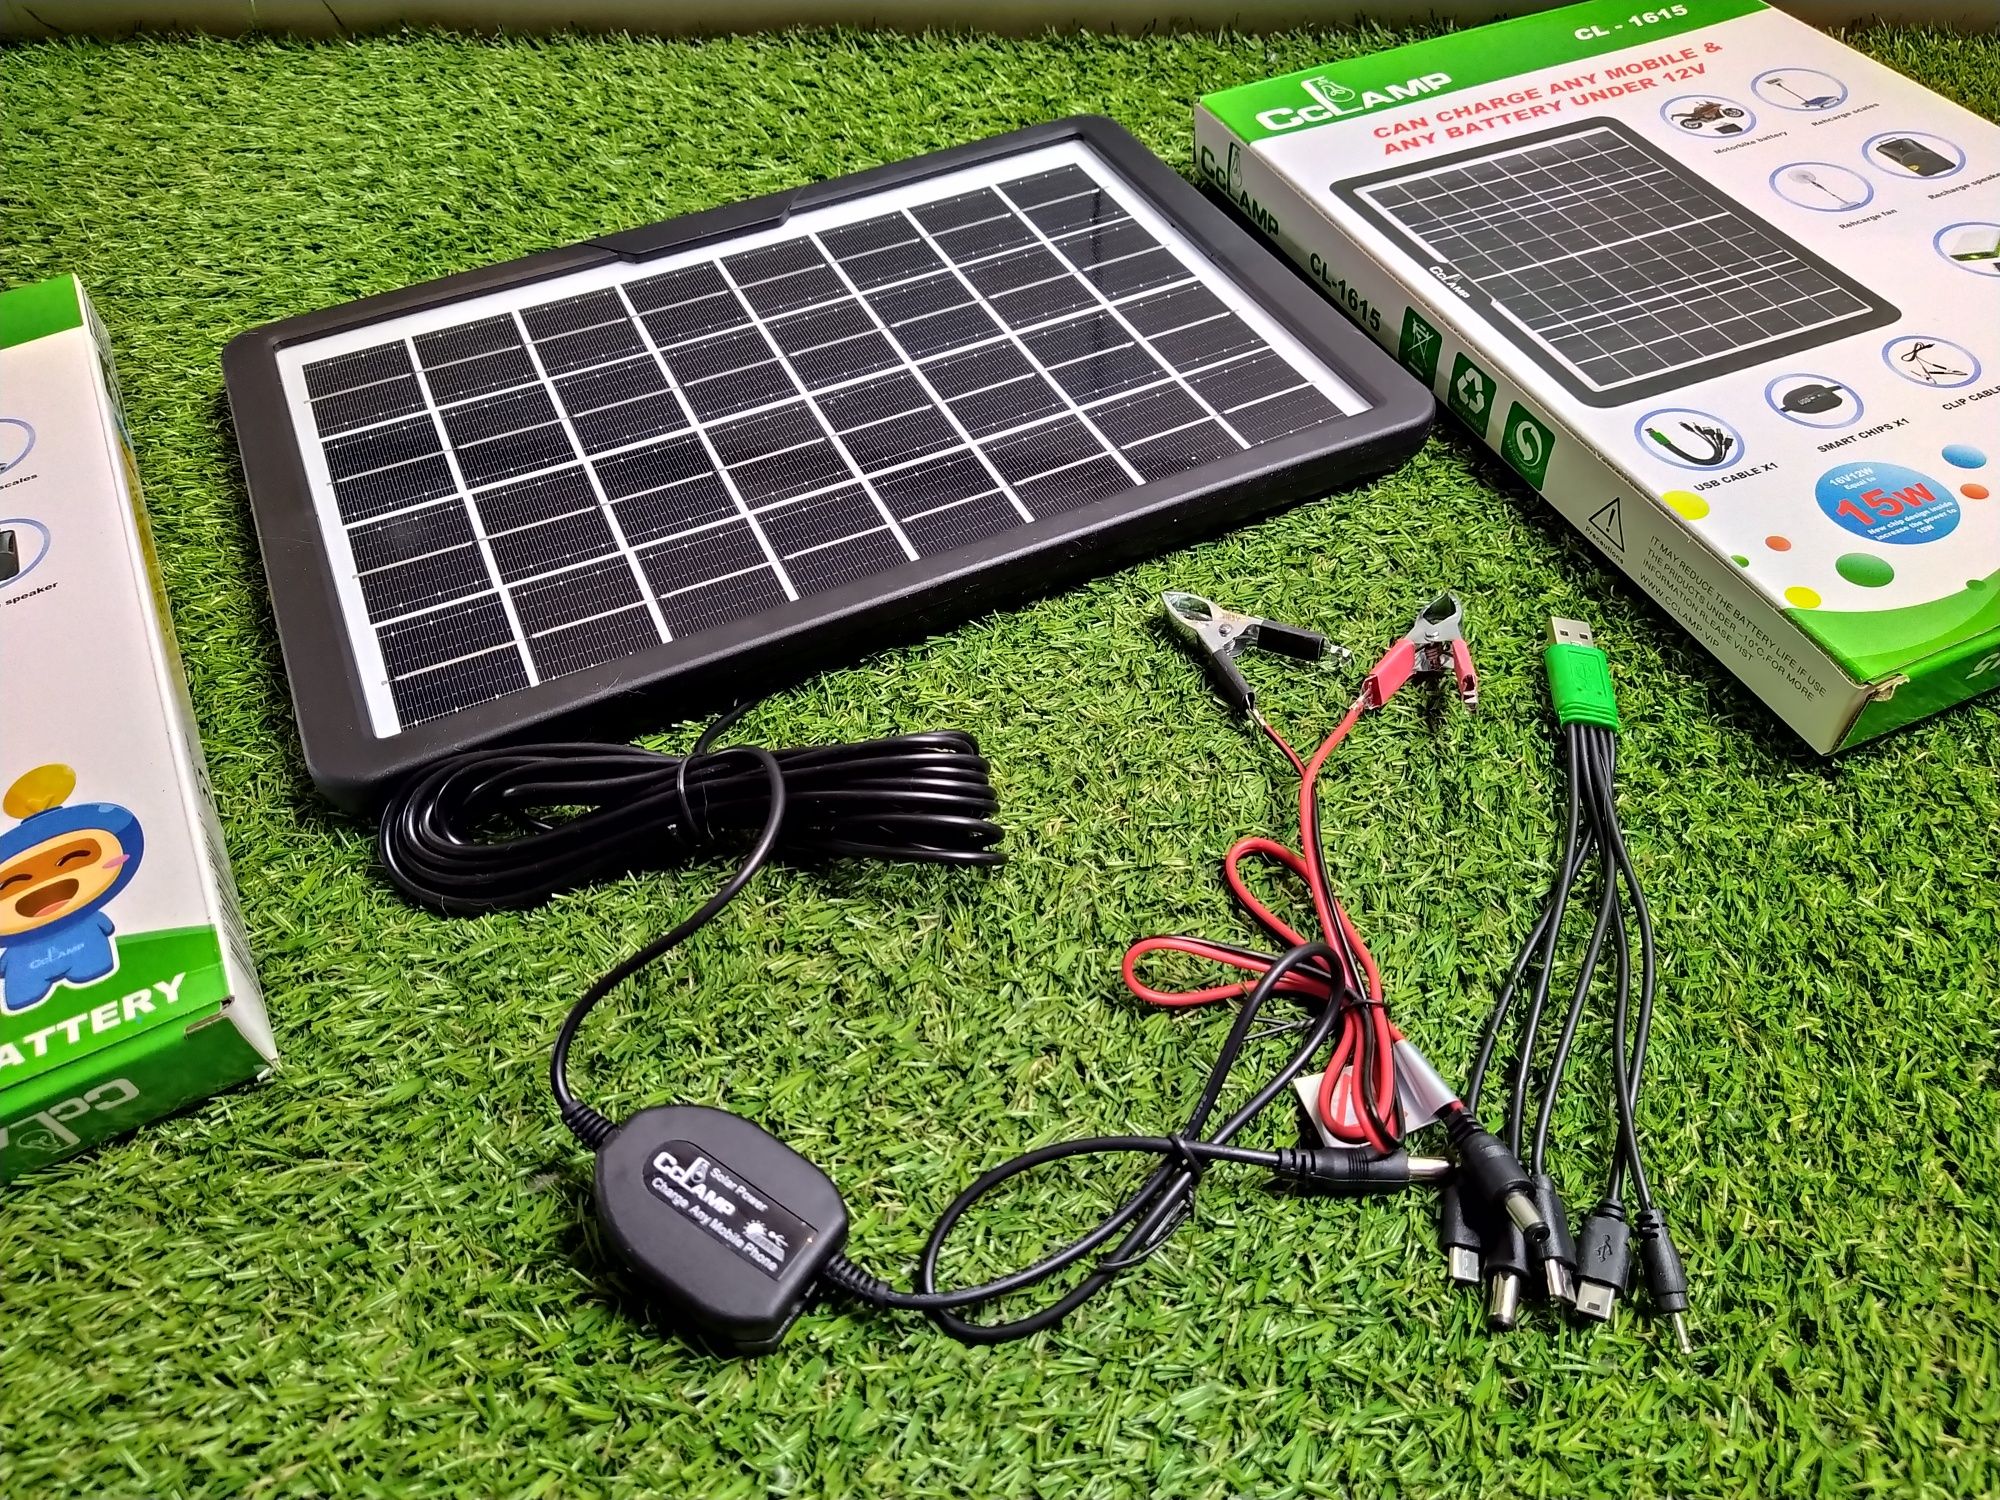 Panou solar portabil pentru incarcare dispozitive sau acumulatori 15W